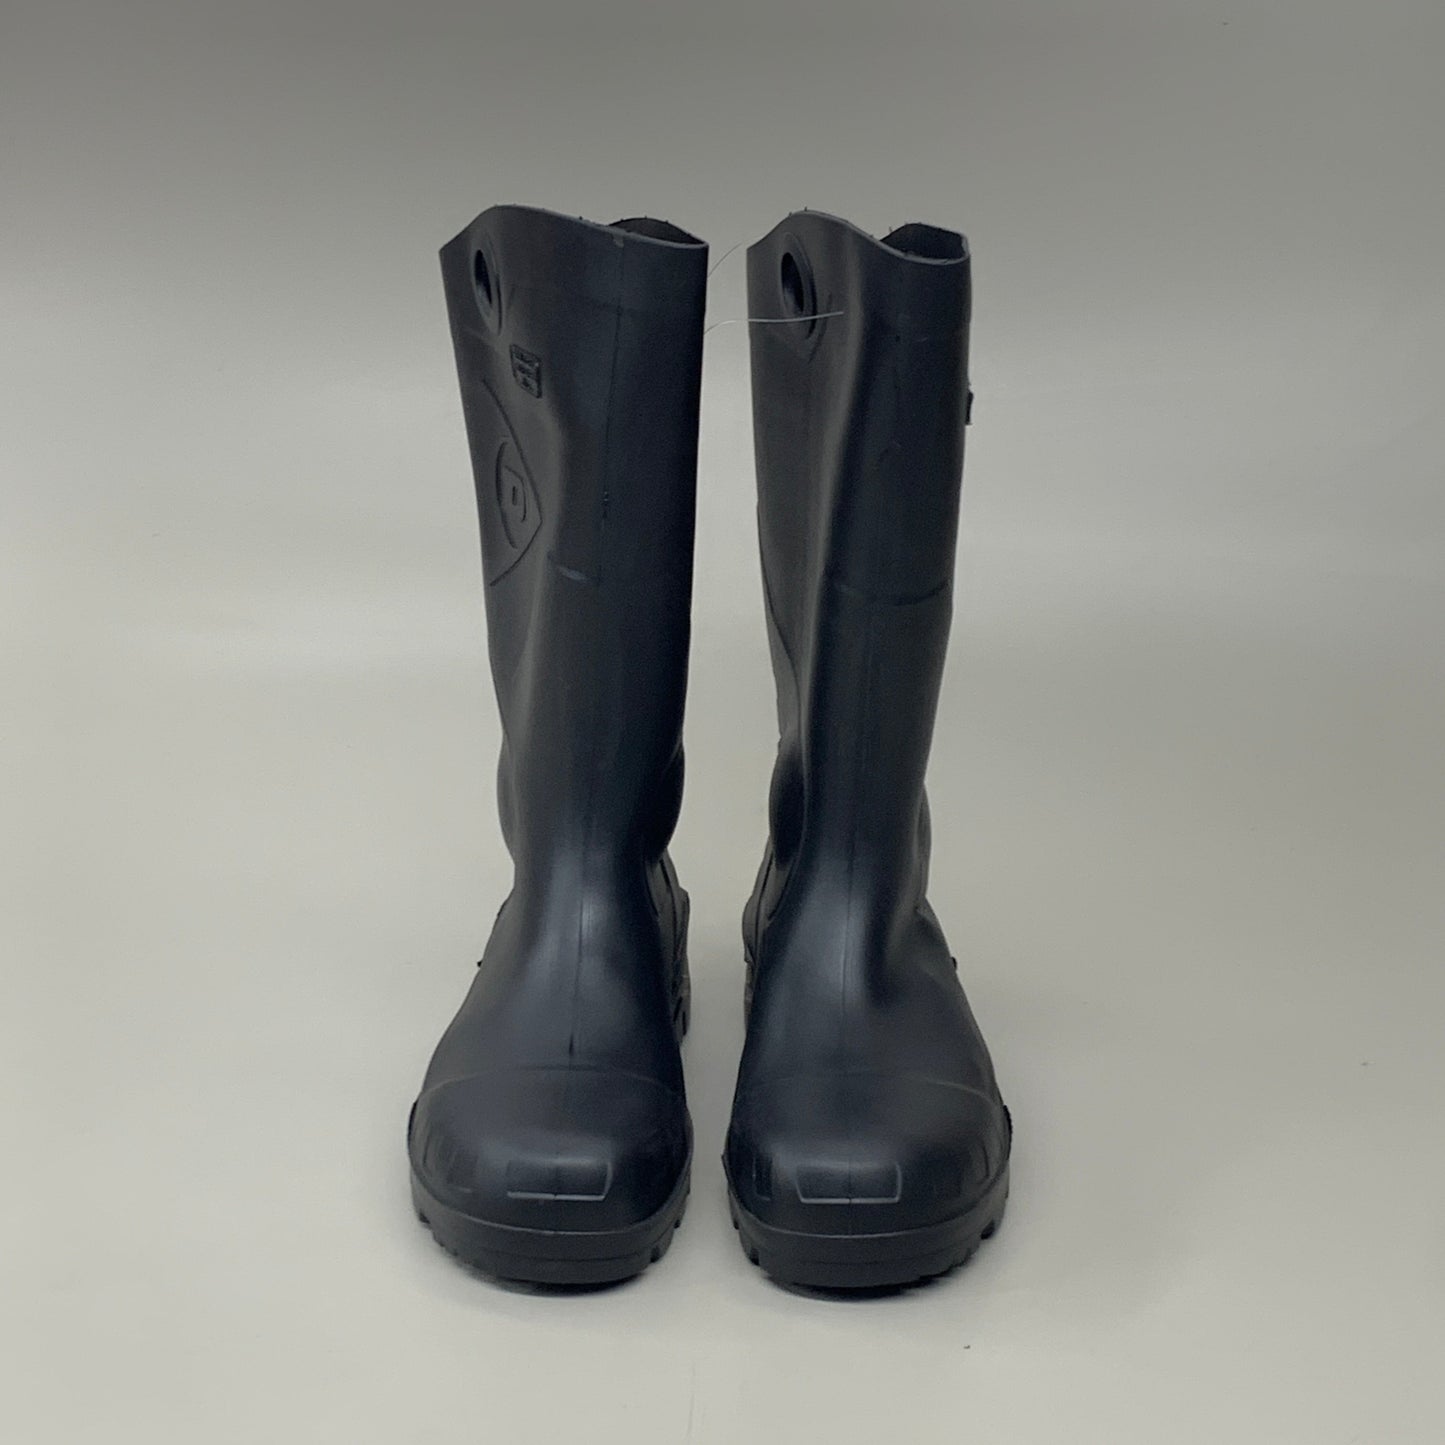 DUNLOP Steel Toe Safety Boots Waterproof Sz M 4 W 6 Black 86776